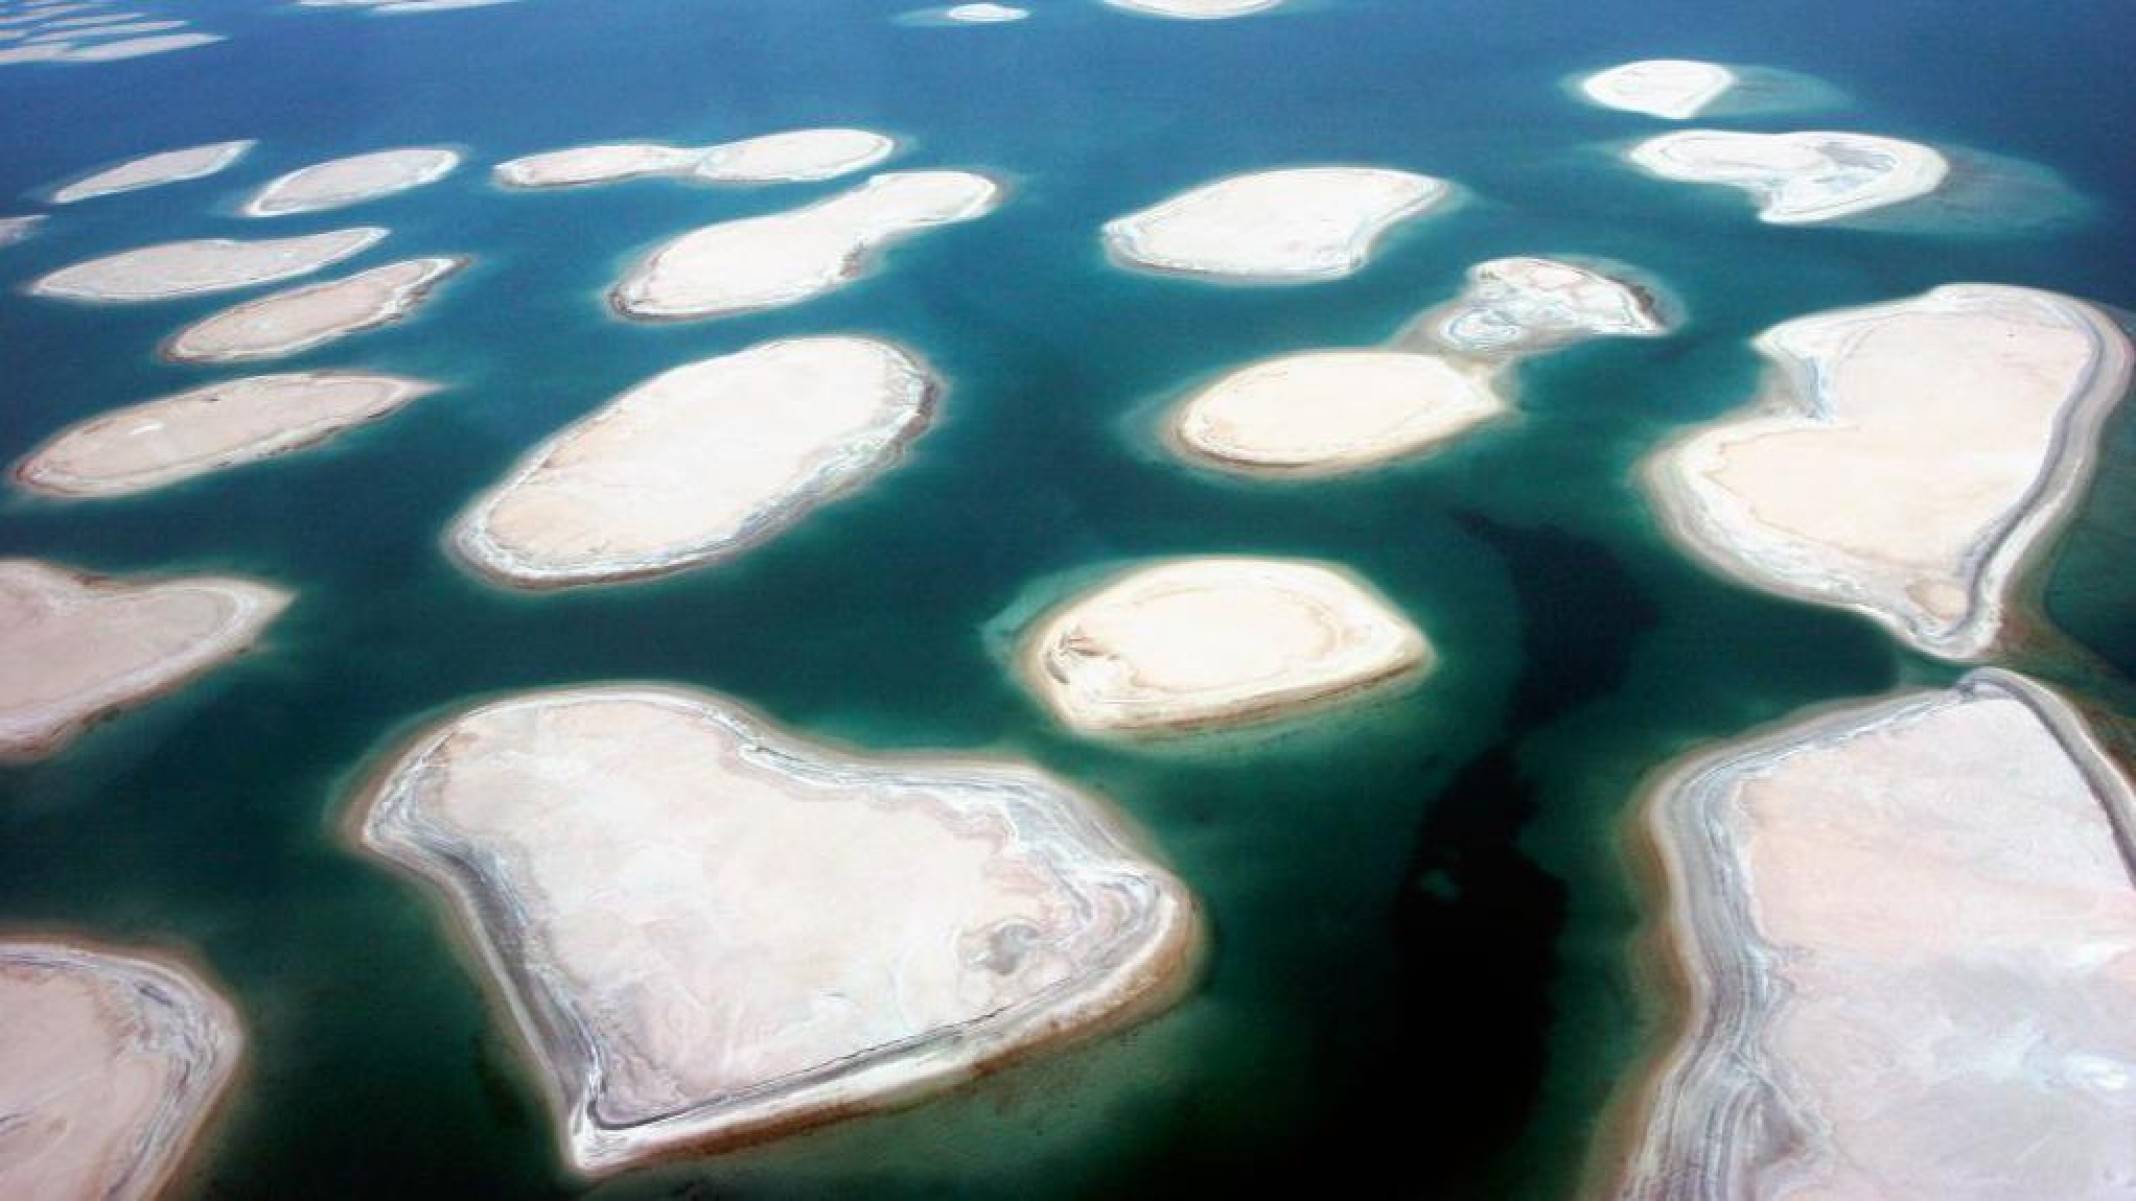 As ilhas de R$ 63 bilhões que se tornaram 'projeto mais inútil do mundo' em Dubai